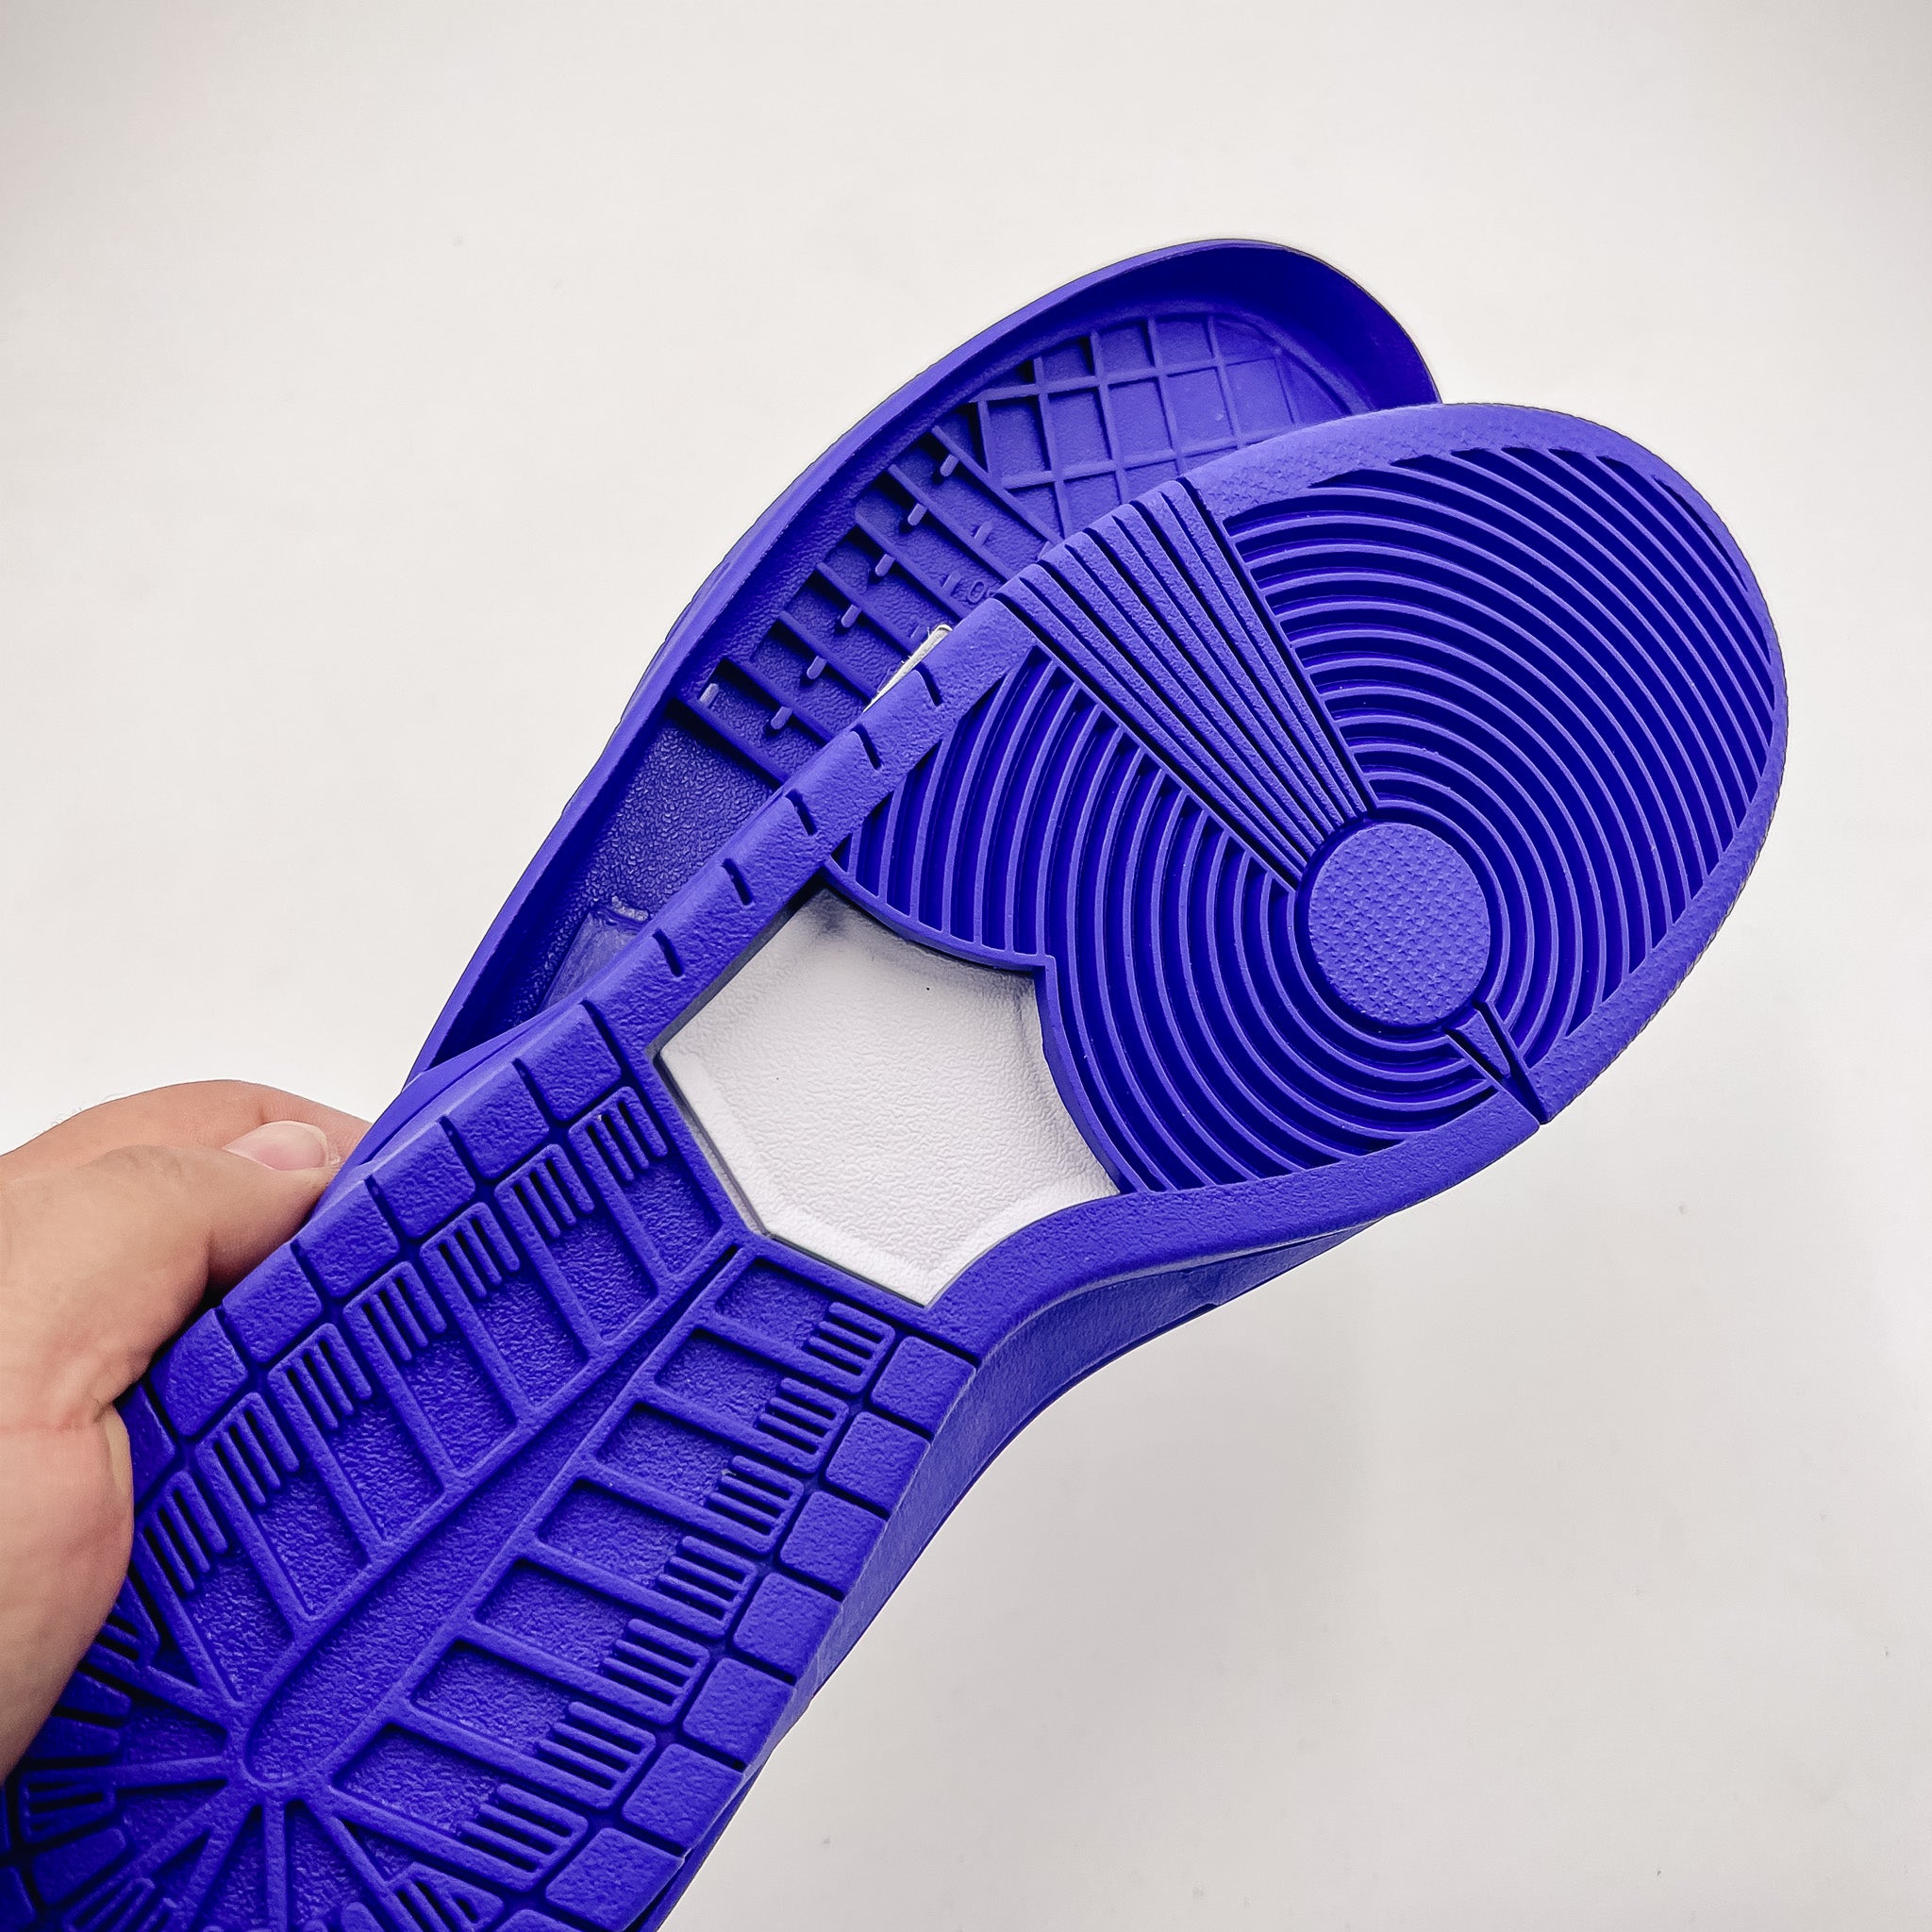 SkateBoard (SB Dunk) Shoe Soles, Purple